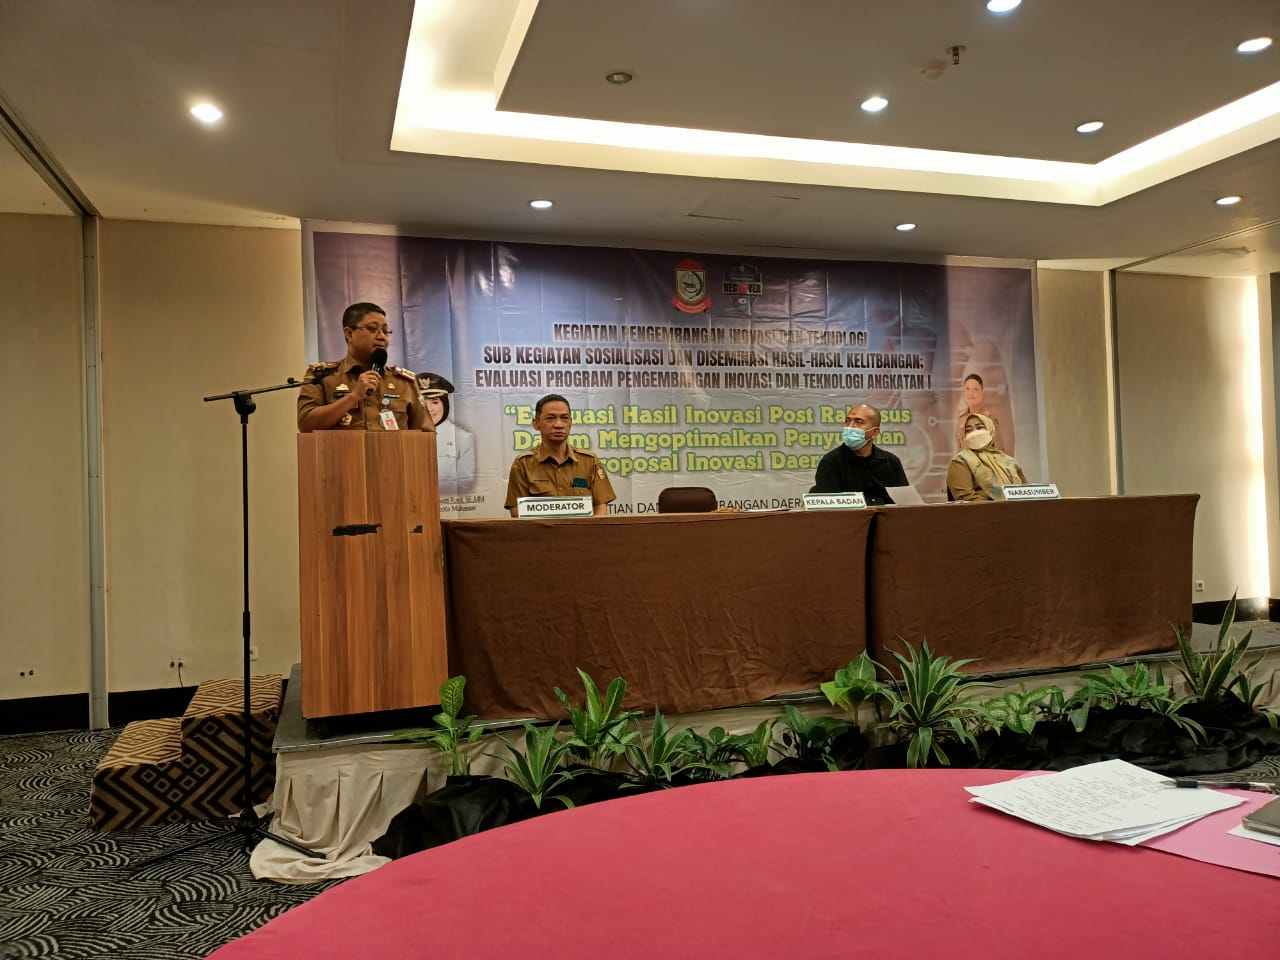 DPU kota Makassar Ikuti kegiatan Evaluasi Inovasi Post Rakorsus oleh Balitbangda